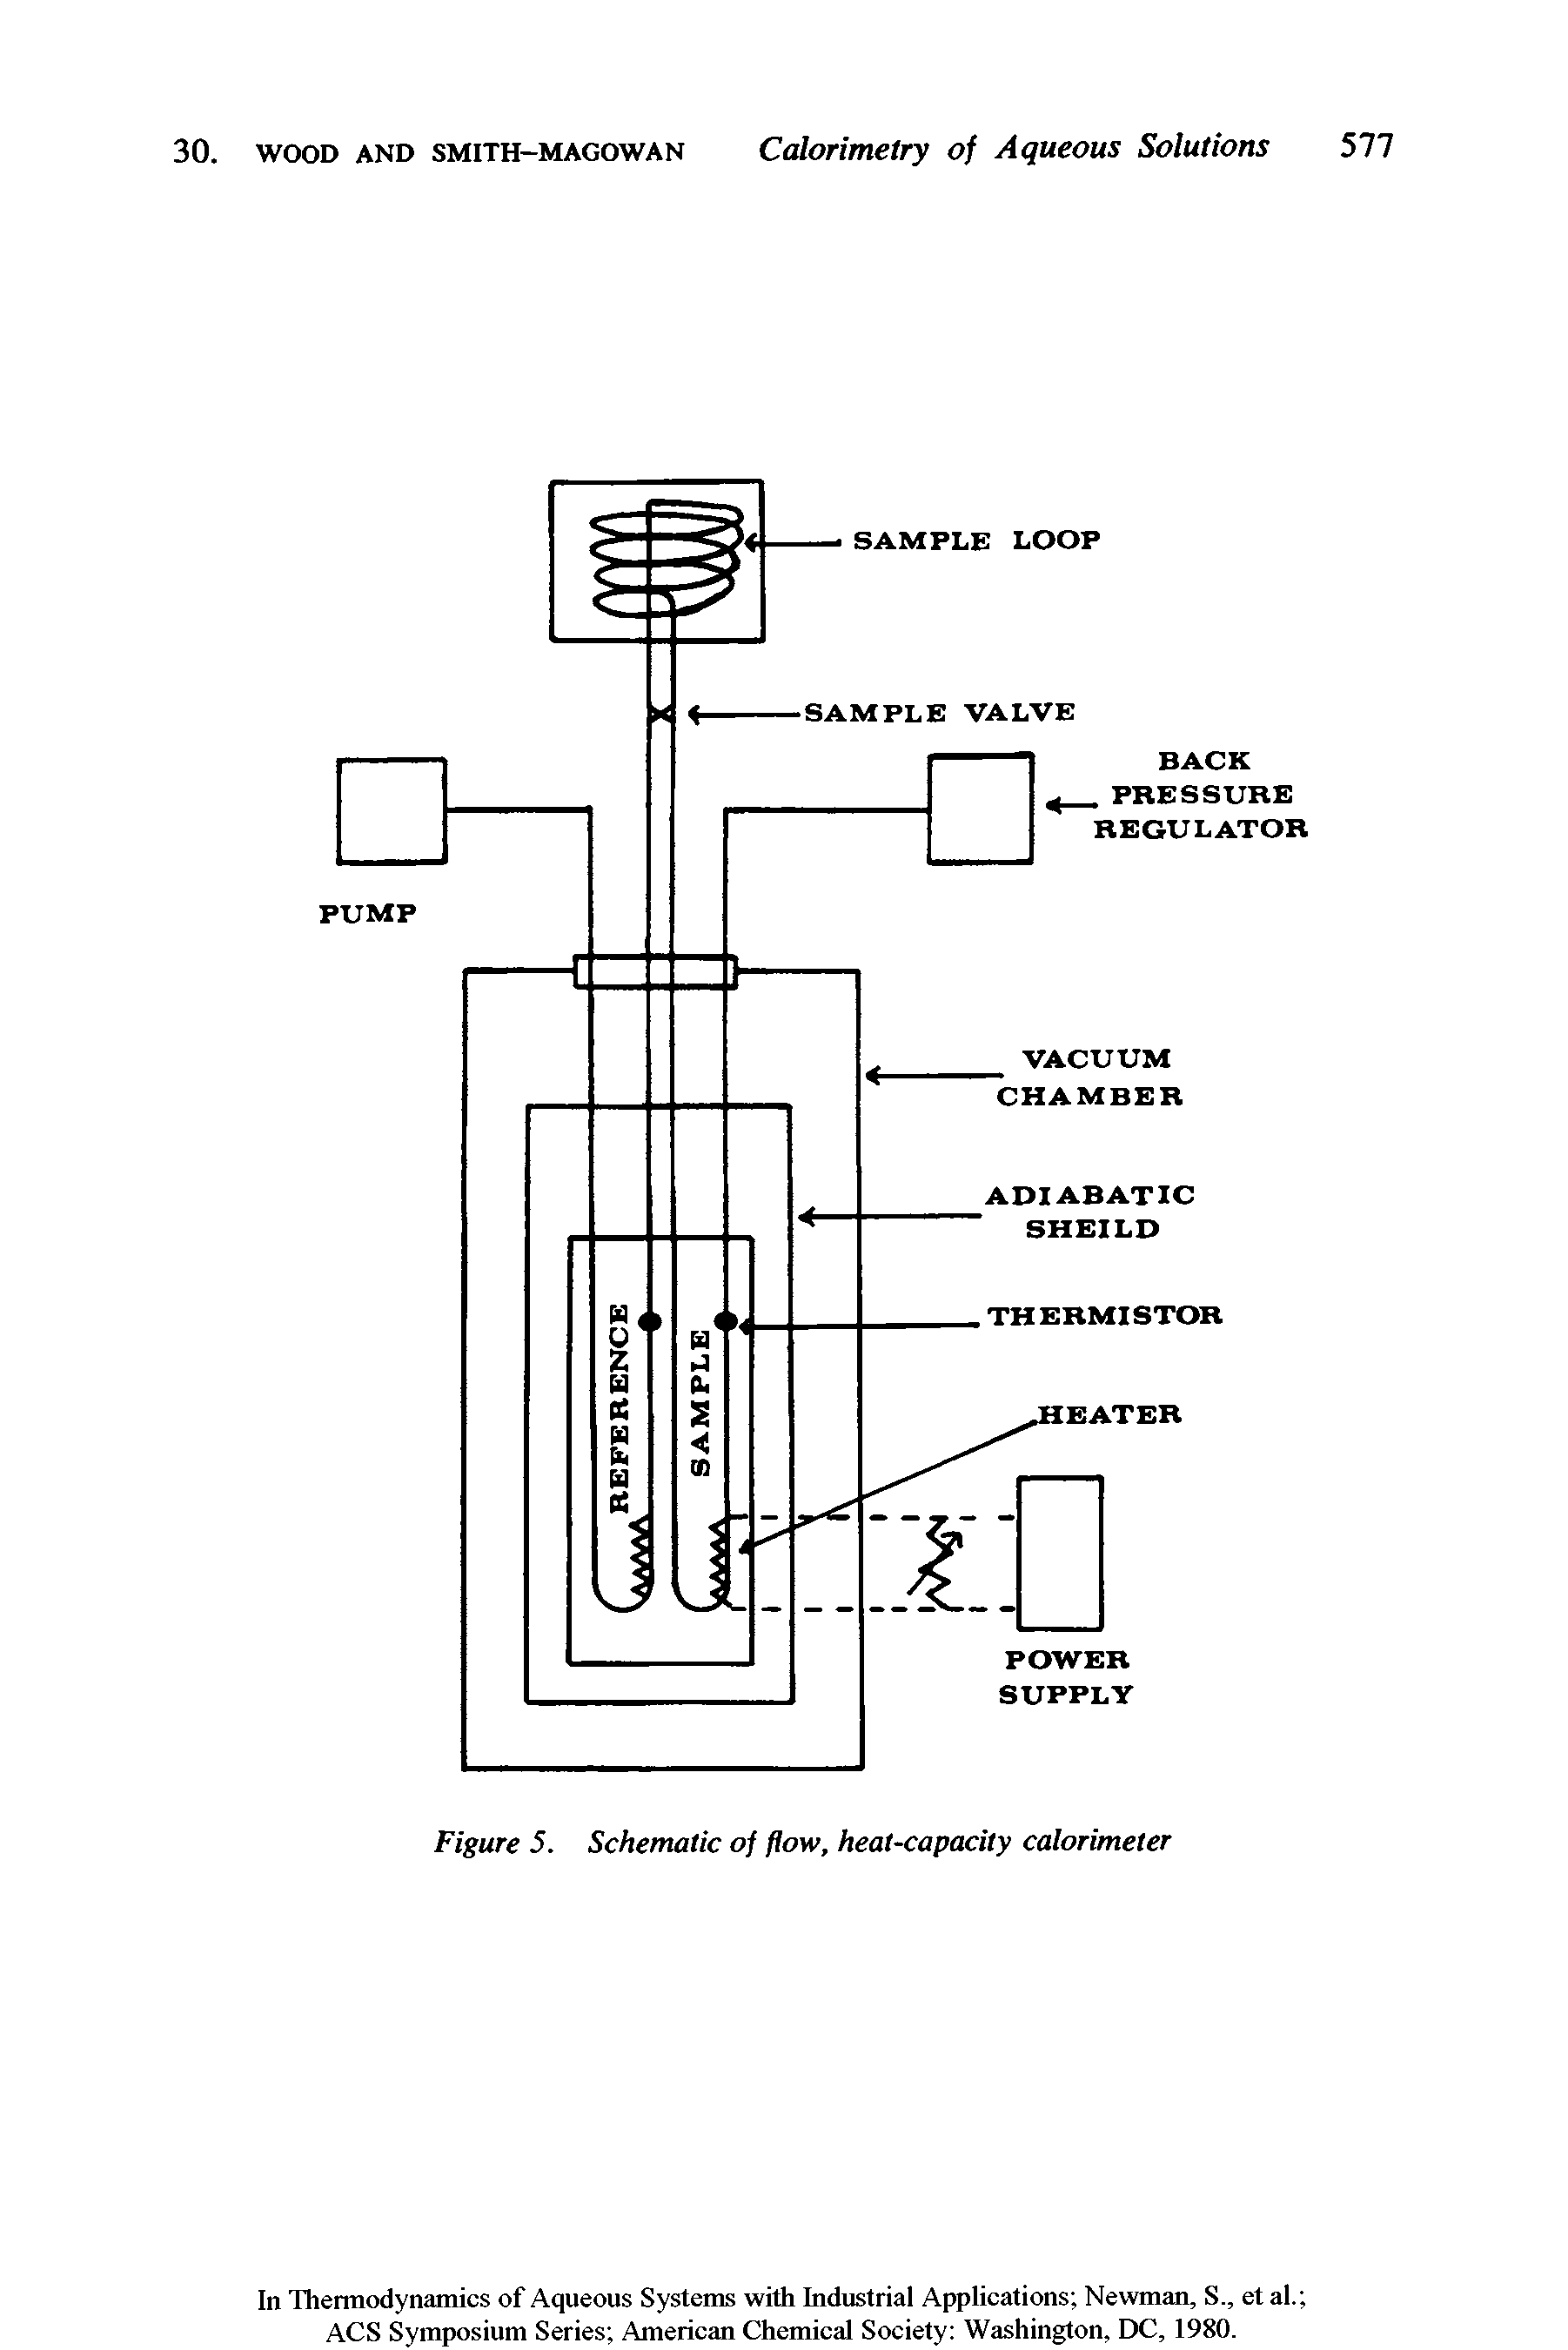 Figure 5. Schematic of flow, heat-capacity calorimeter...